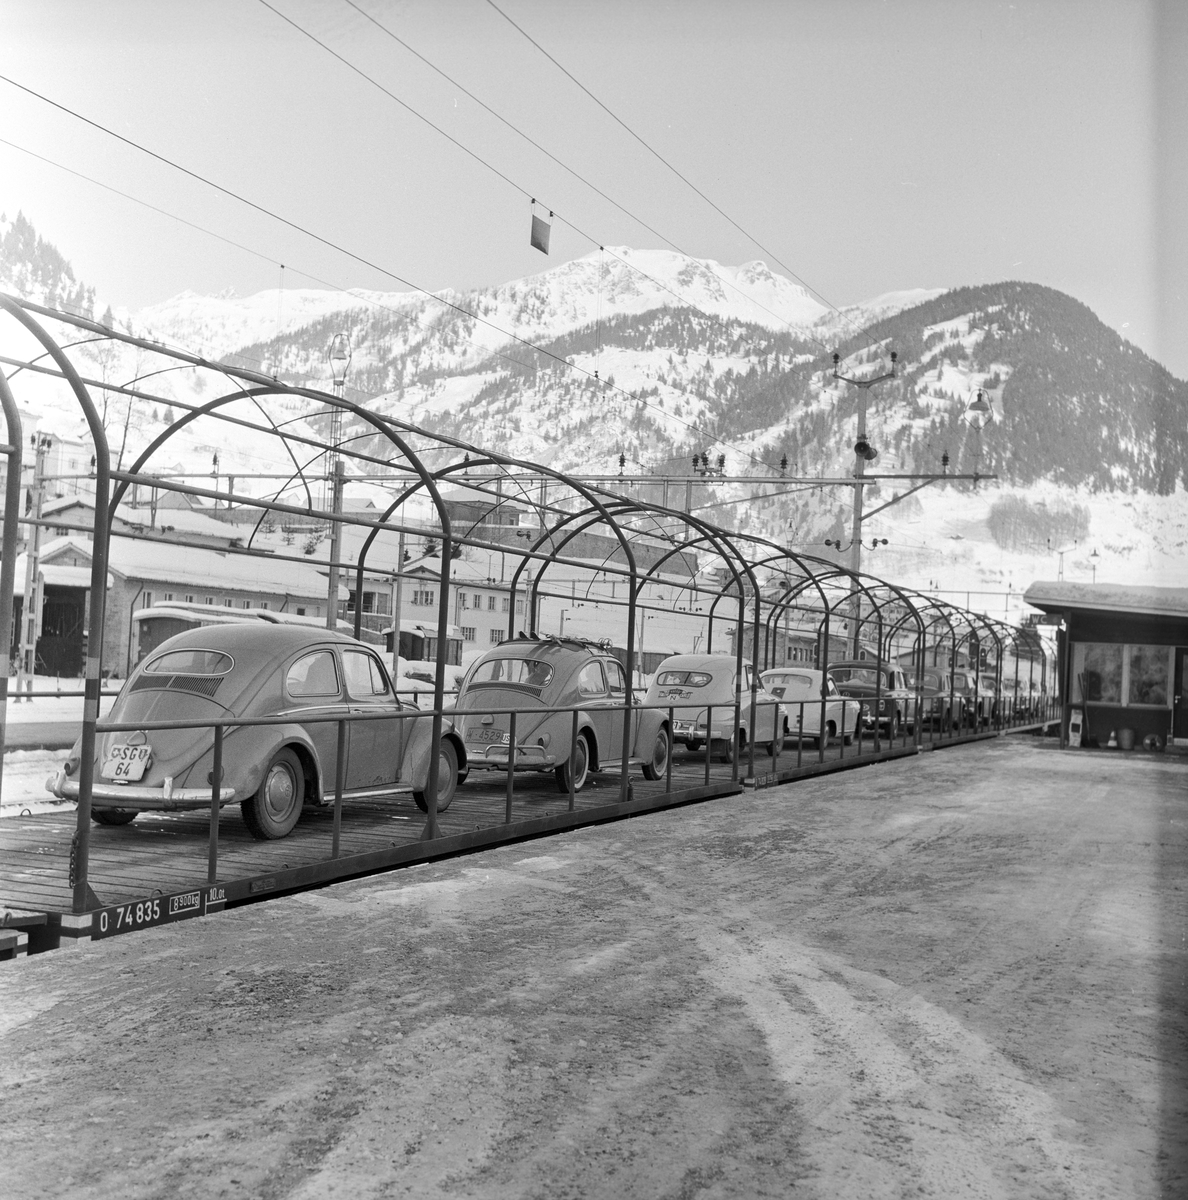 Serie. Jernbane (fjell-ferge) frakter biler mellom Italia og Sveits.